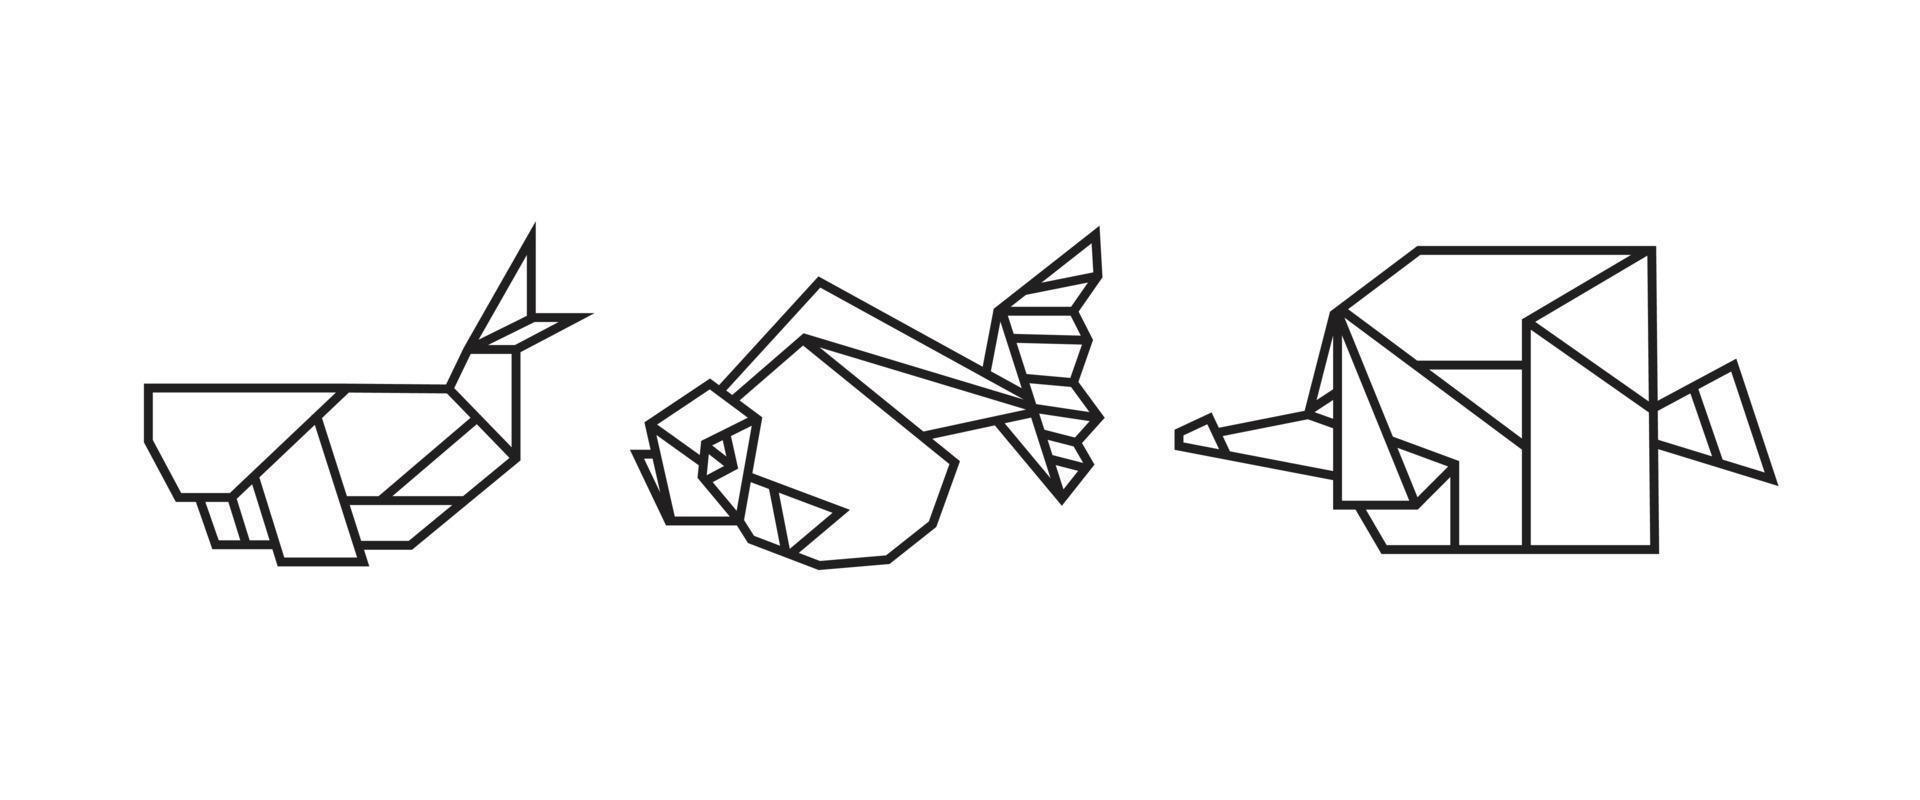 Fischillustrationen im Origami-Stil vektor